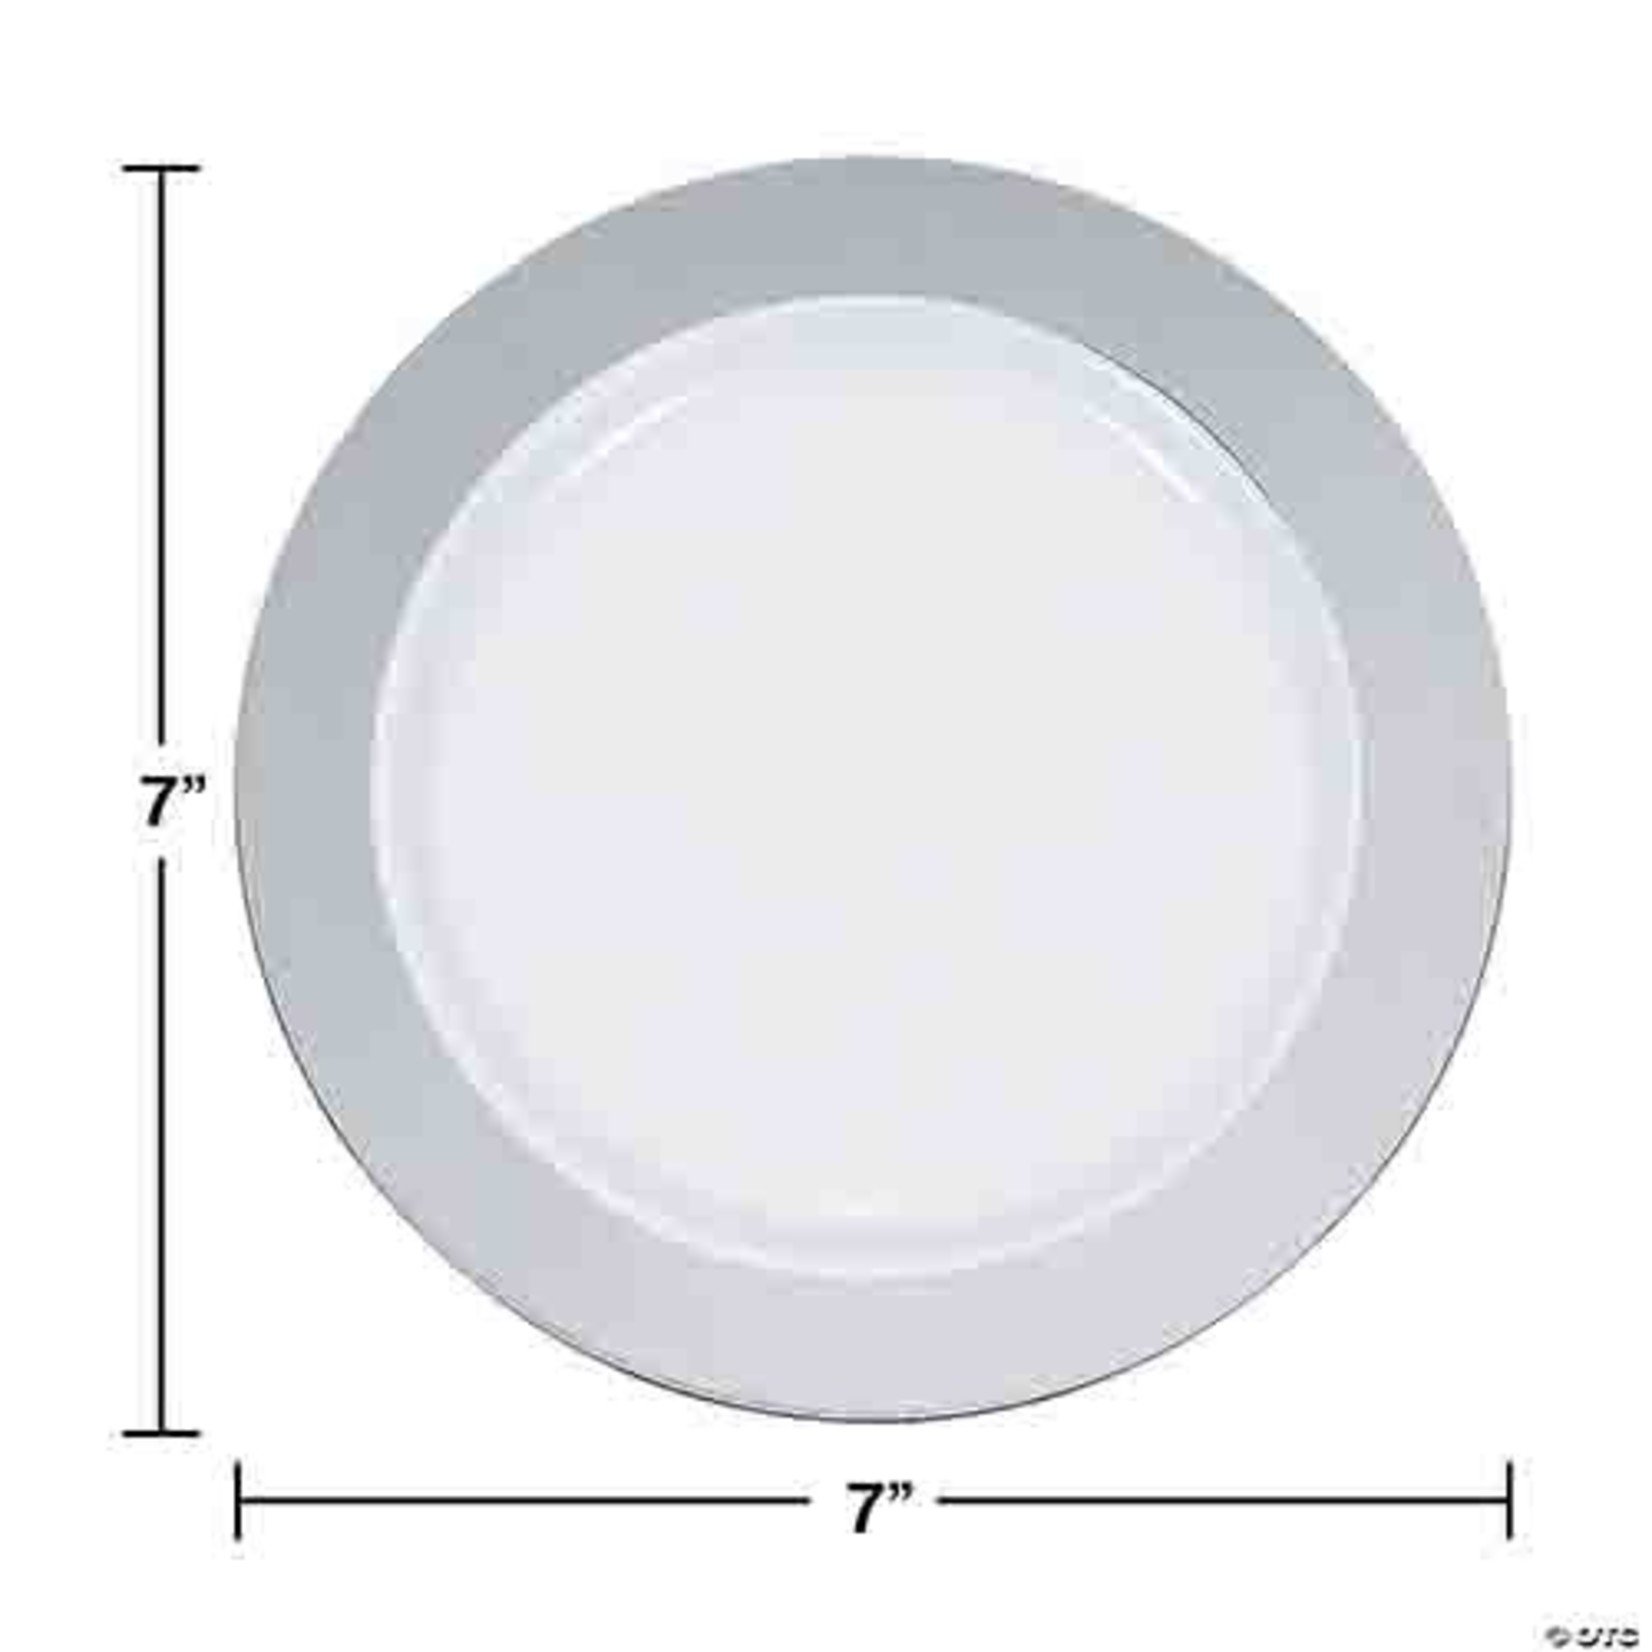 Elegant Dining 7.5" Premium White Plastic Plates W/ Silver Rim - 10ct.